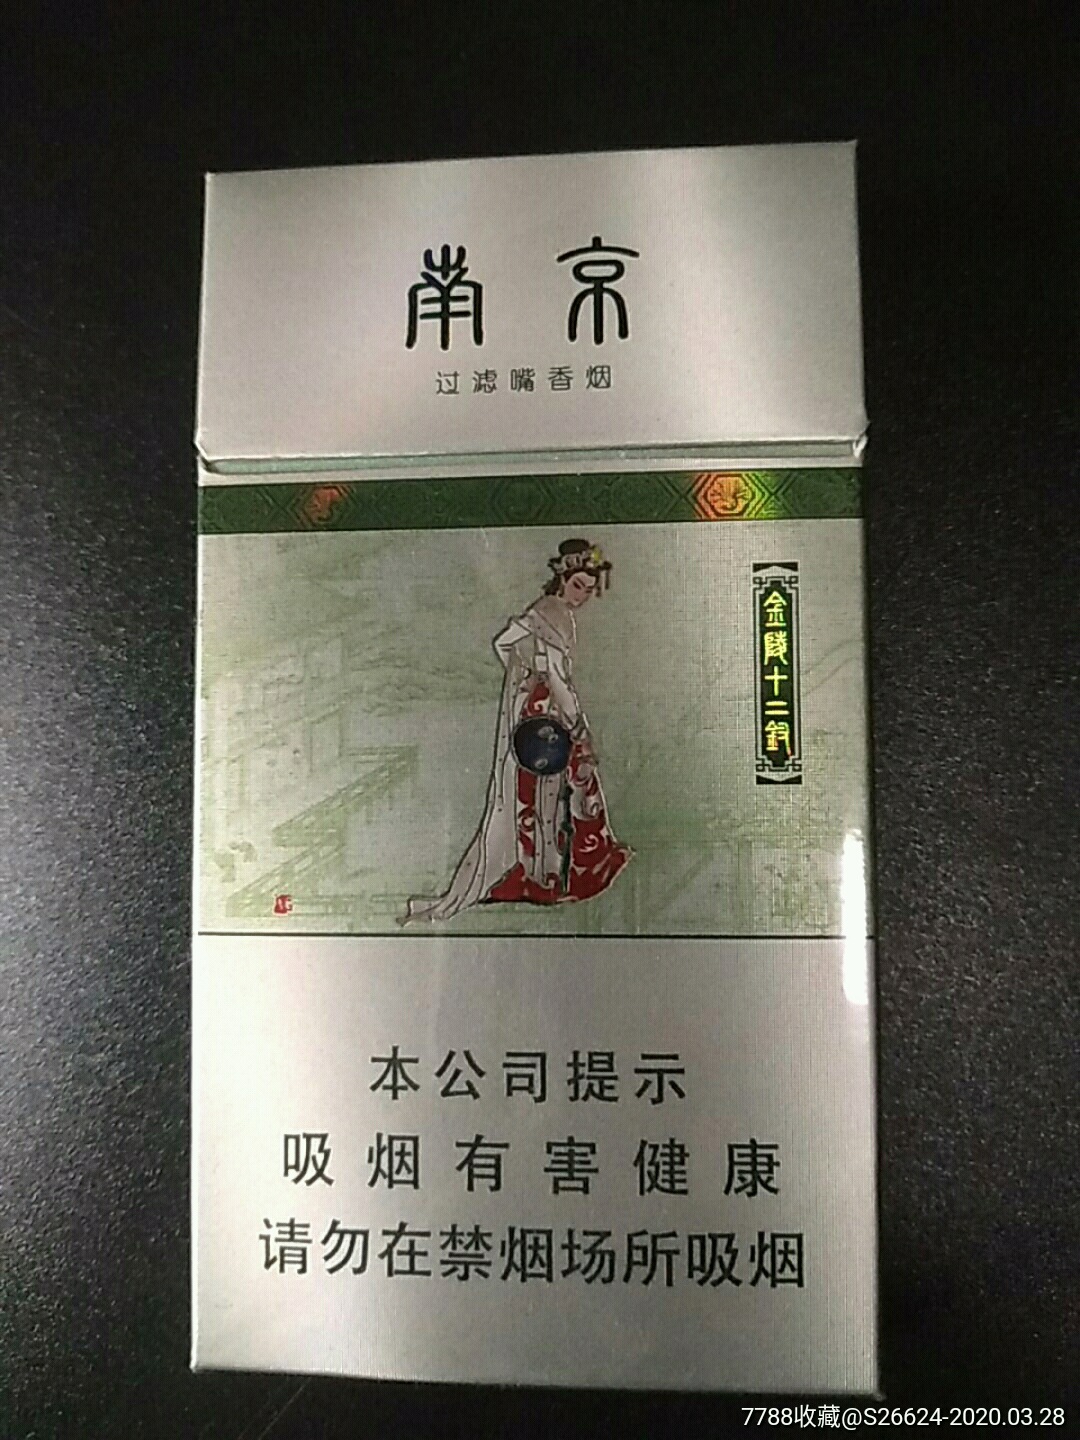 南京过滤嘴细支香烟壳100s江苏中烟工业有限责任烟草公司出品